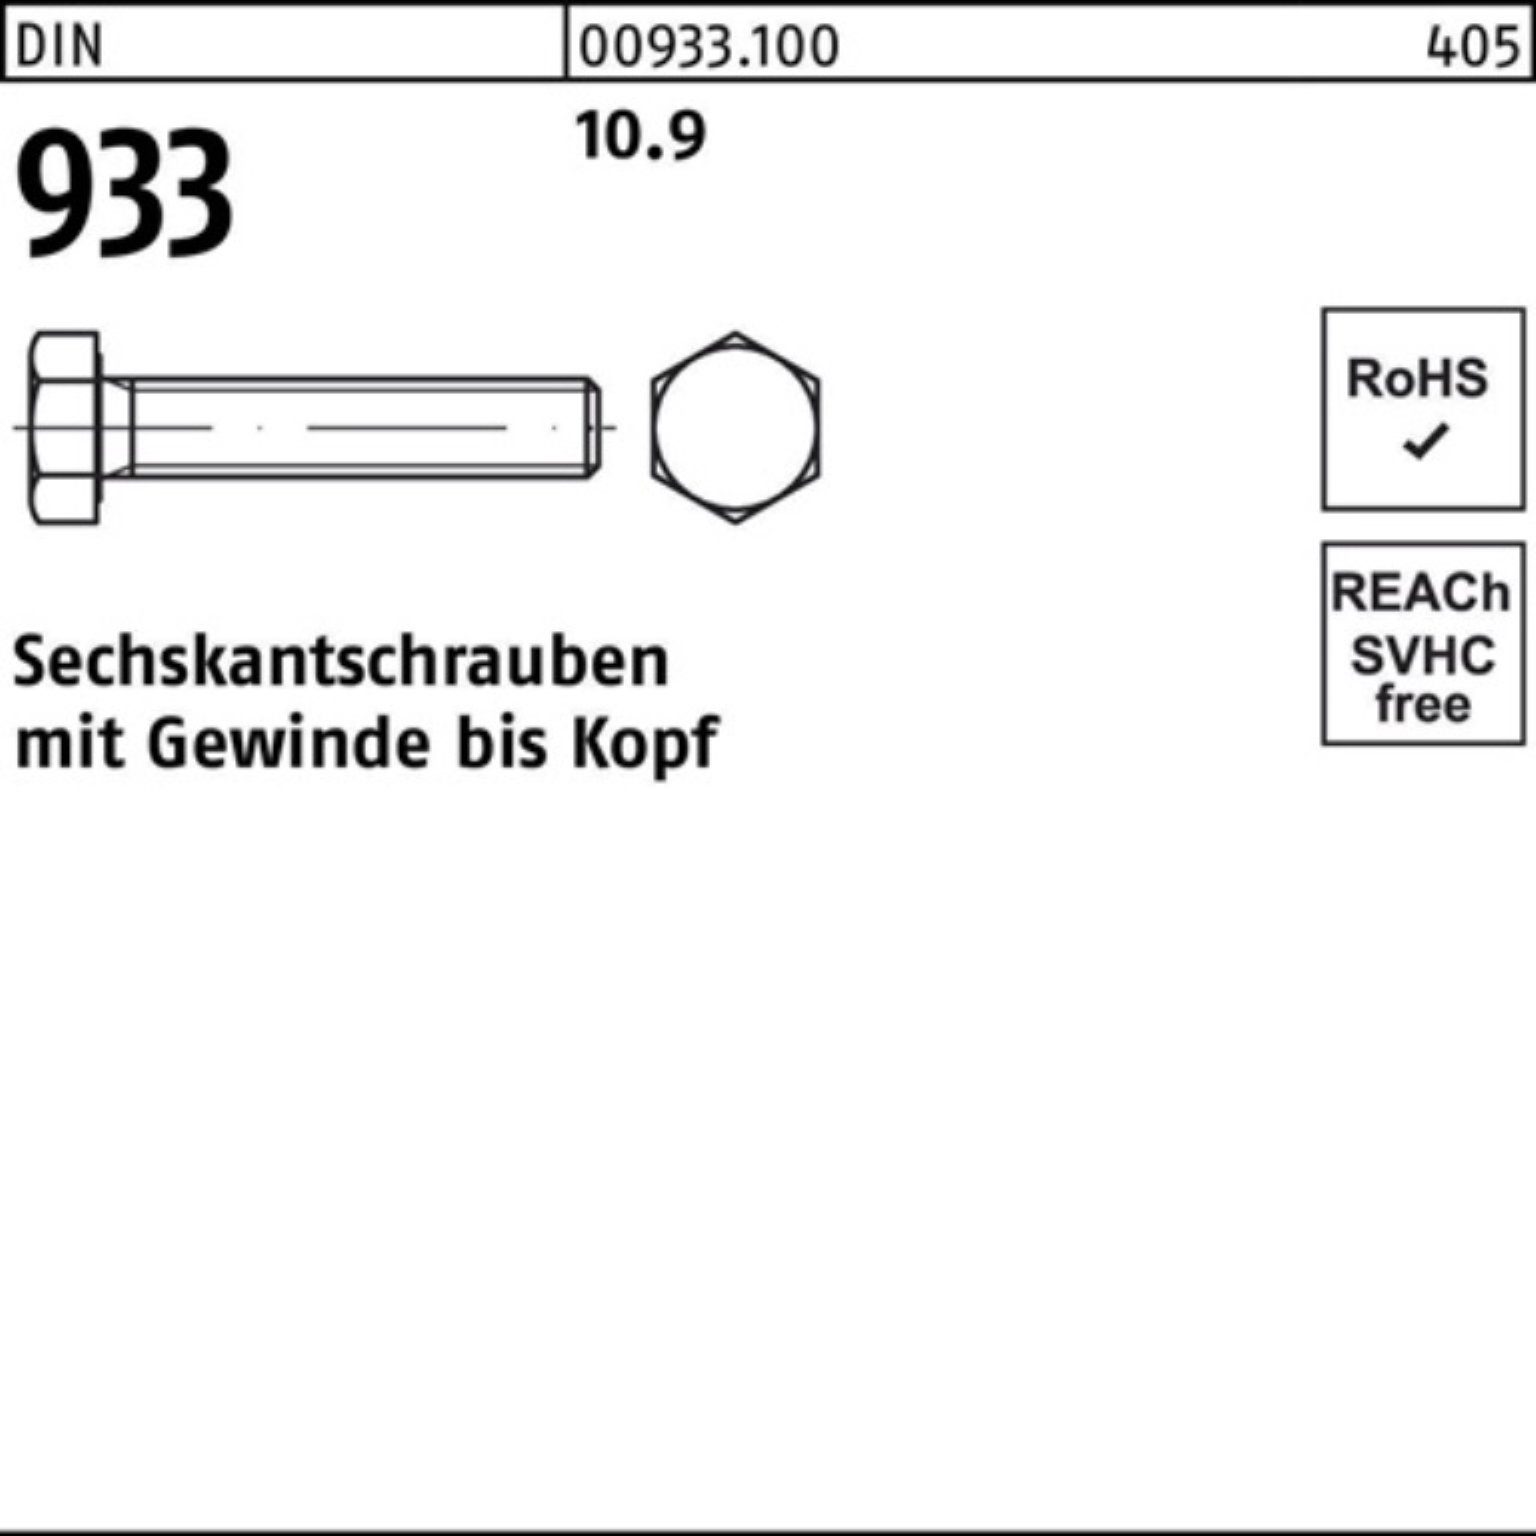 10.9 50 80 Reyher Pack 933 100er DIN VG 933 Sechskantschraube Stück M12x Sechskantschraube DIN